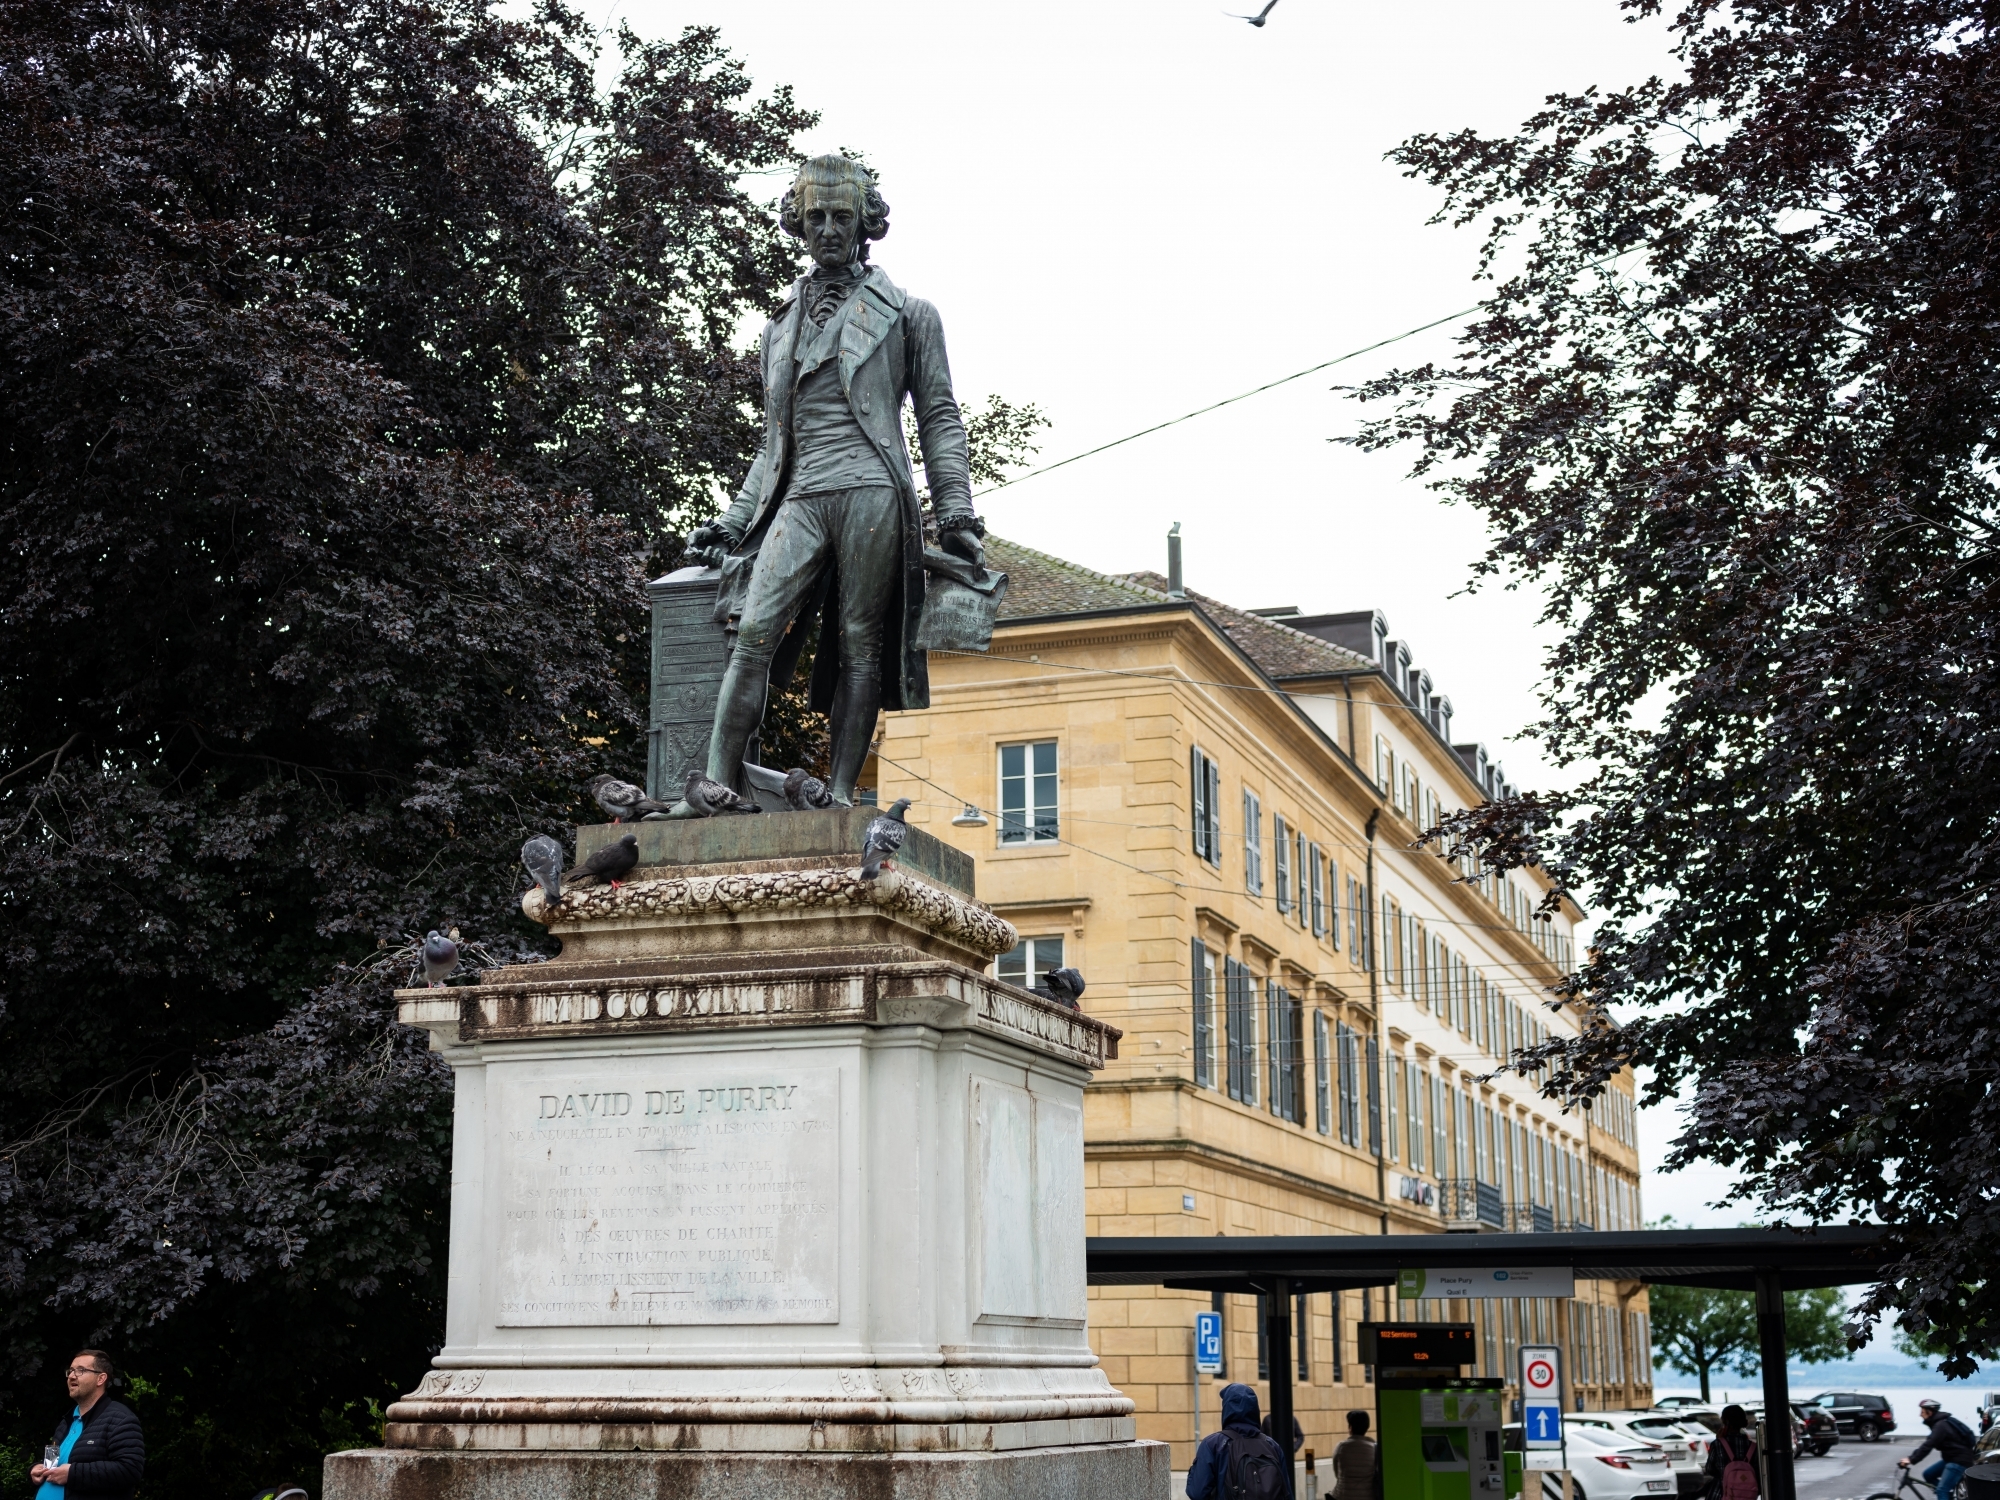 Bien que la statue de David de Pury fut coulée en 1948, elle n'a été érigée qu'en 1855. Pourquoi?